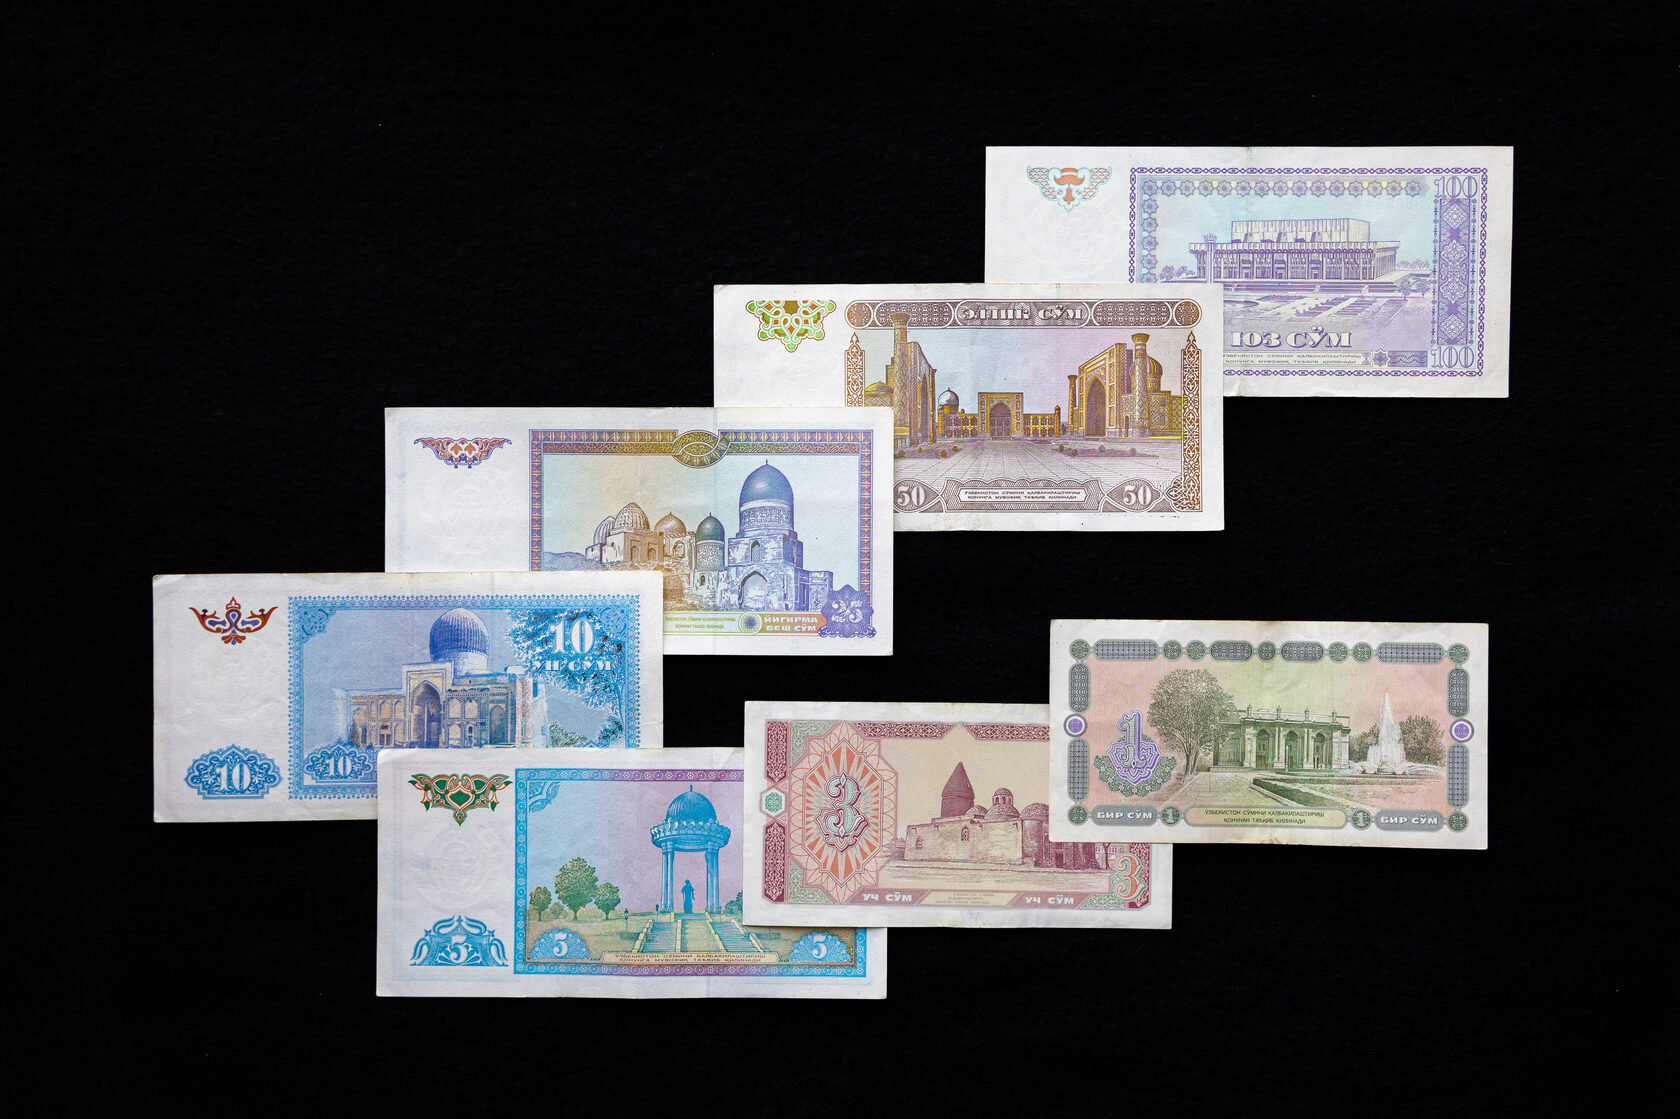 680 сумов. 2000 Узбекских сум. Узбекский сум банкноты в обращении. Нац валюта Узбекистана. 500 Сум Узбекистан.